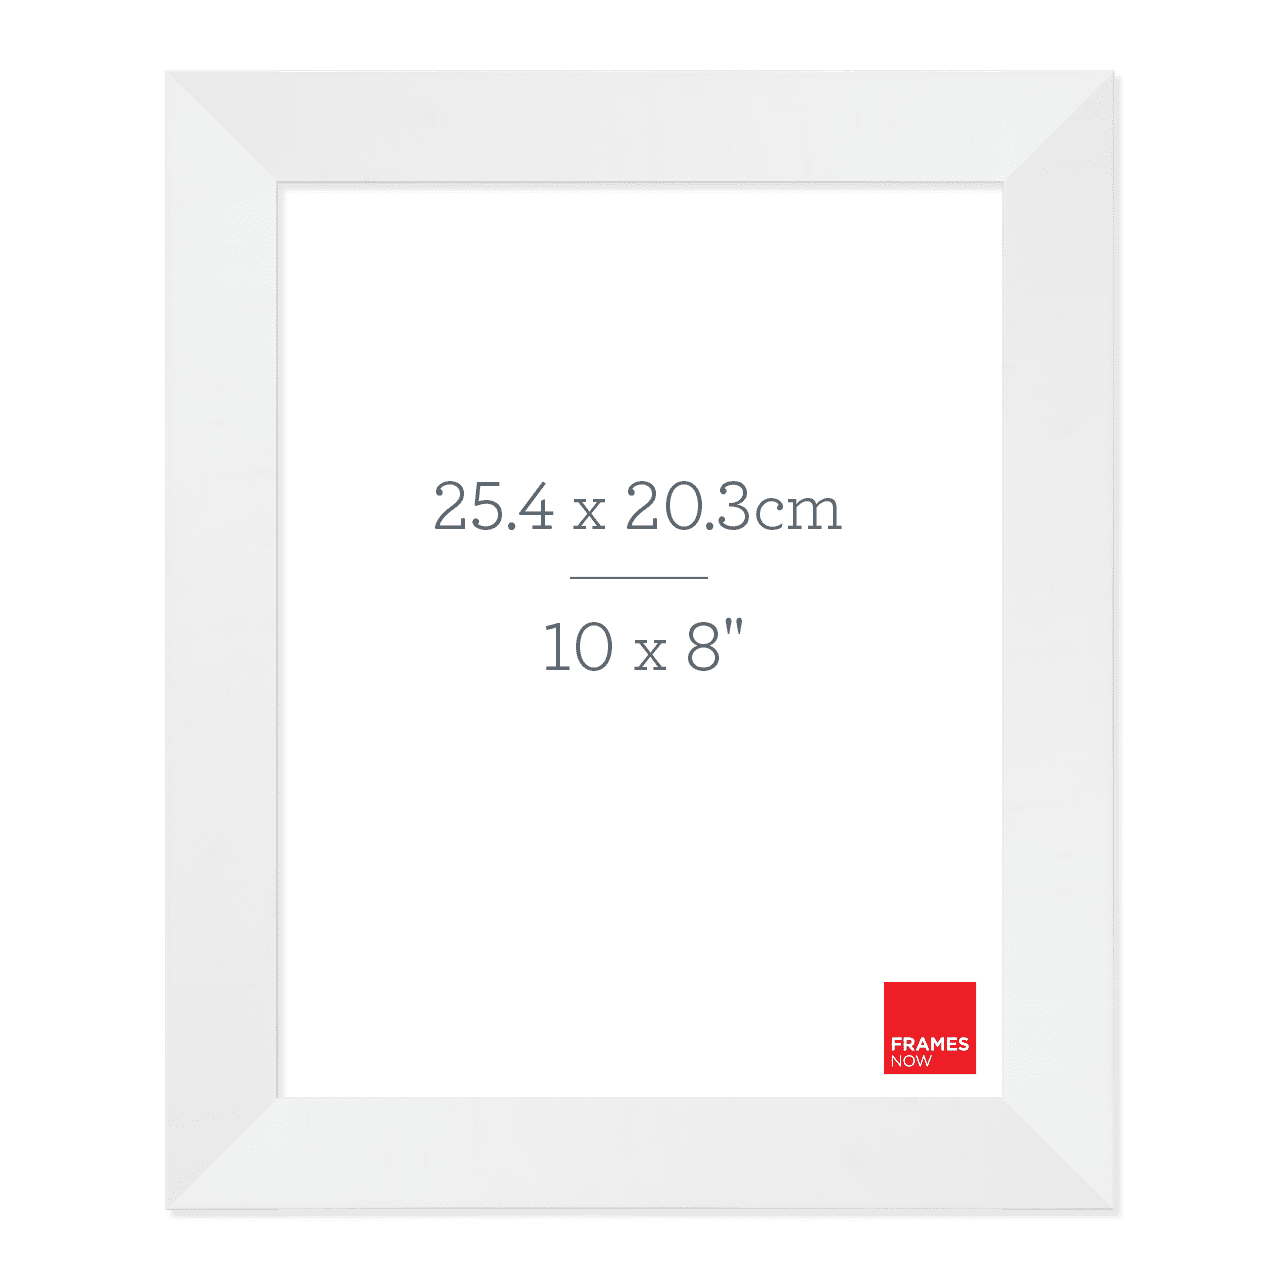 Premium Matte White Picture Frame for 25.4 x 20.3cm Artwork